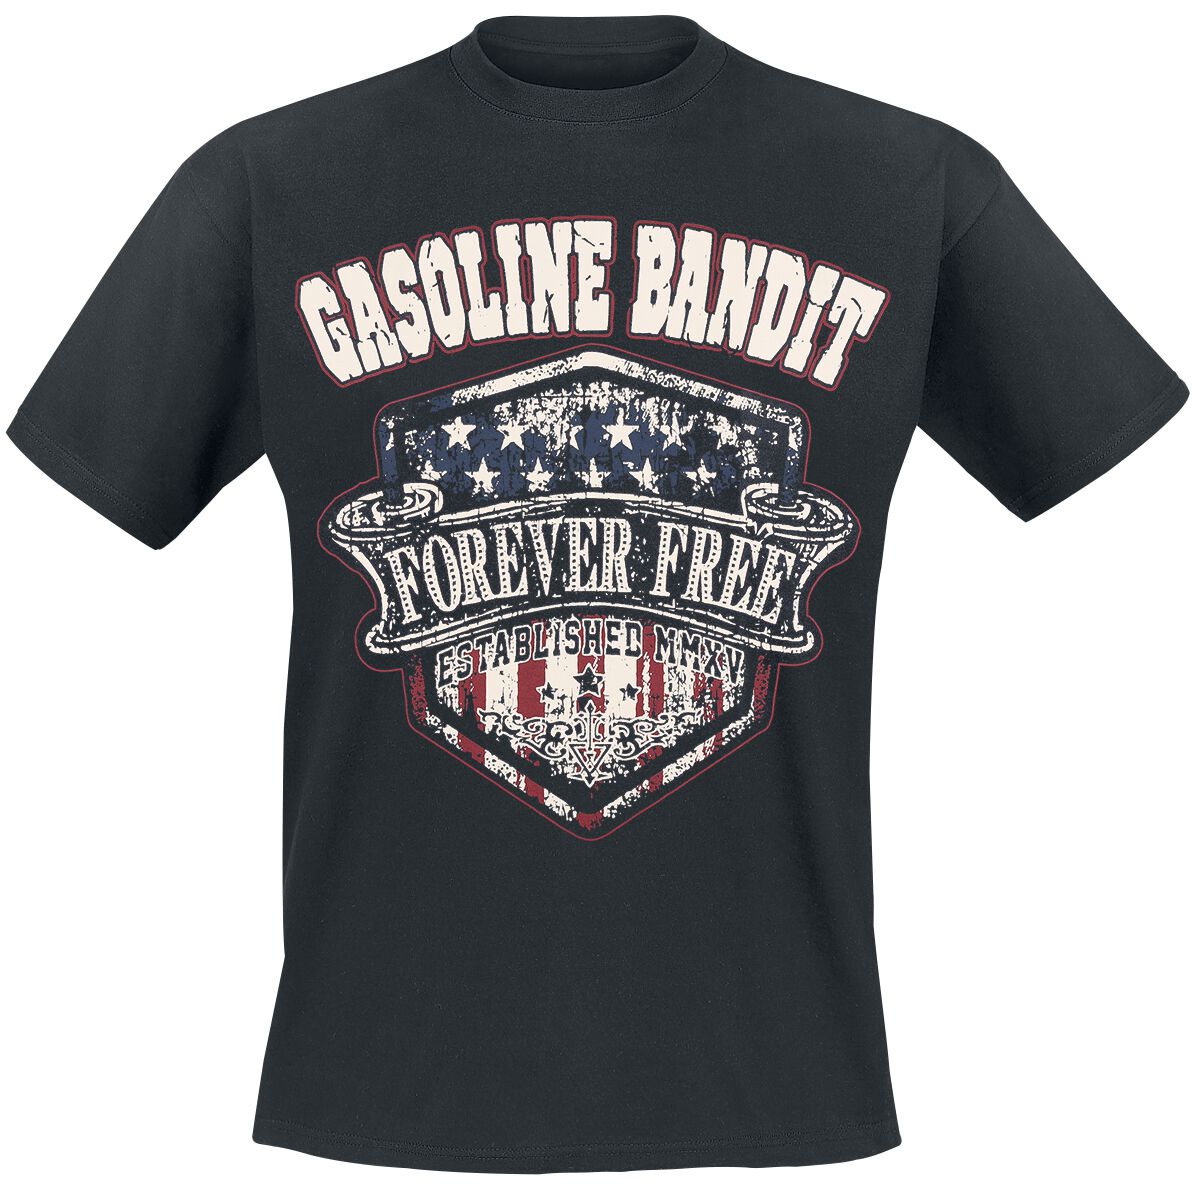 Gasoline Bandit Forever Free T-Shirt black